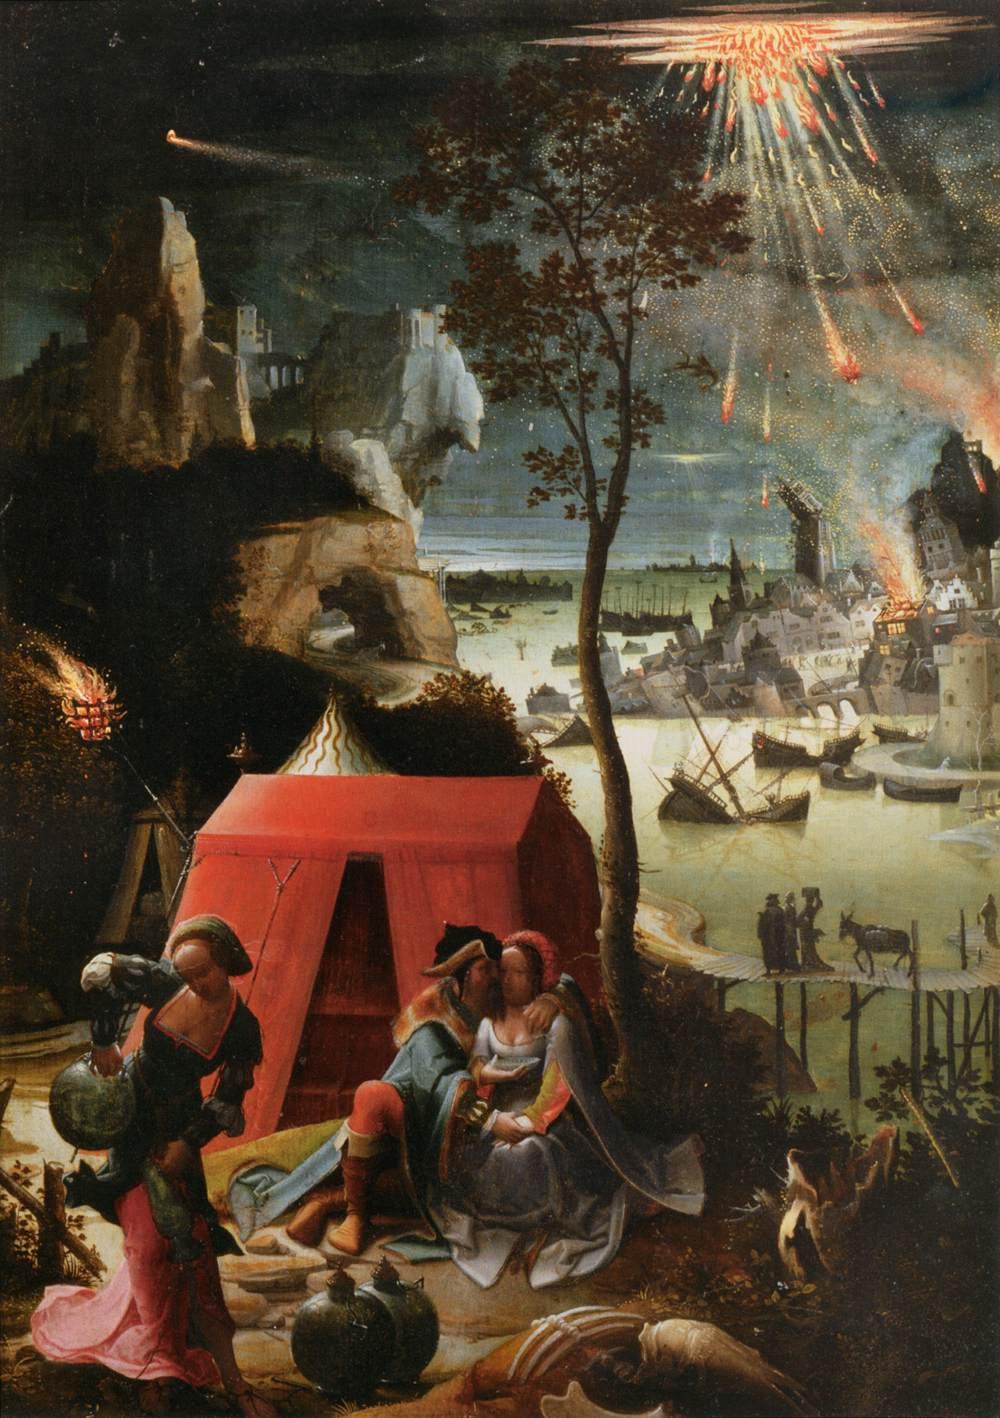 Ló e as filhas fugindo de Sodoma em destruição, em pintura de 1520, feita por Lucas van Leydens